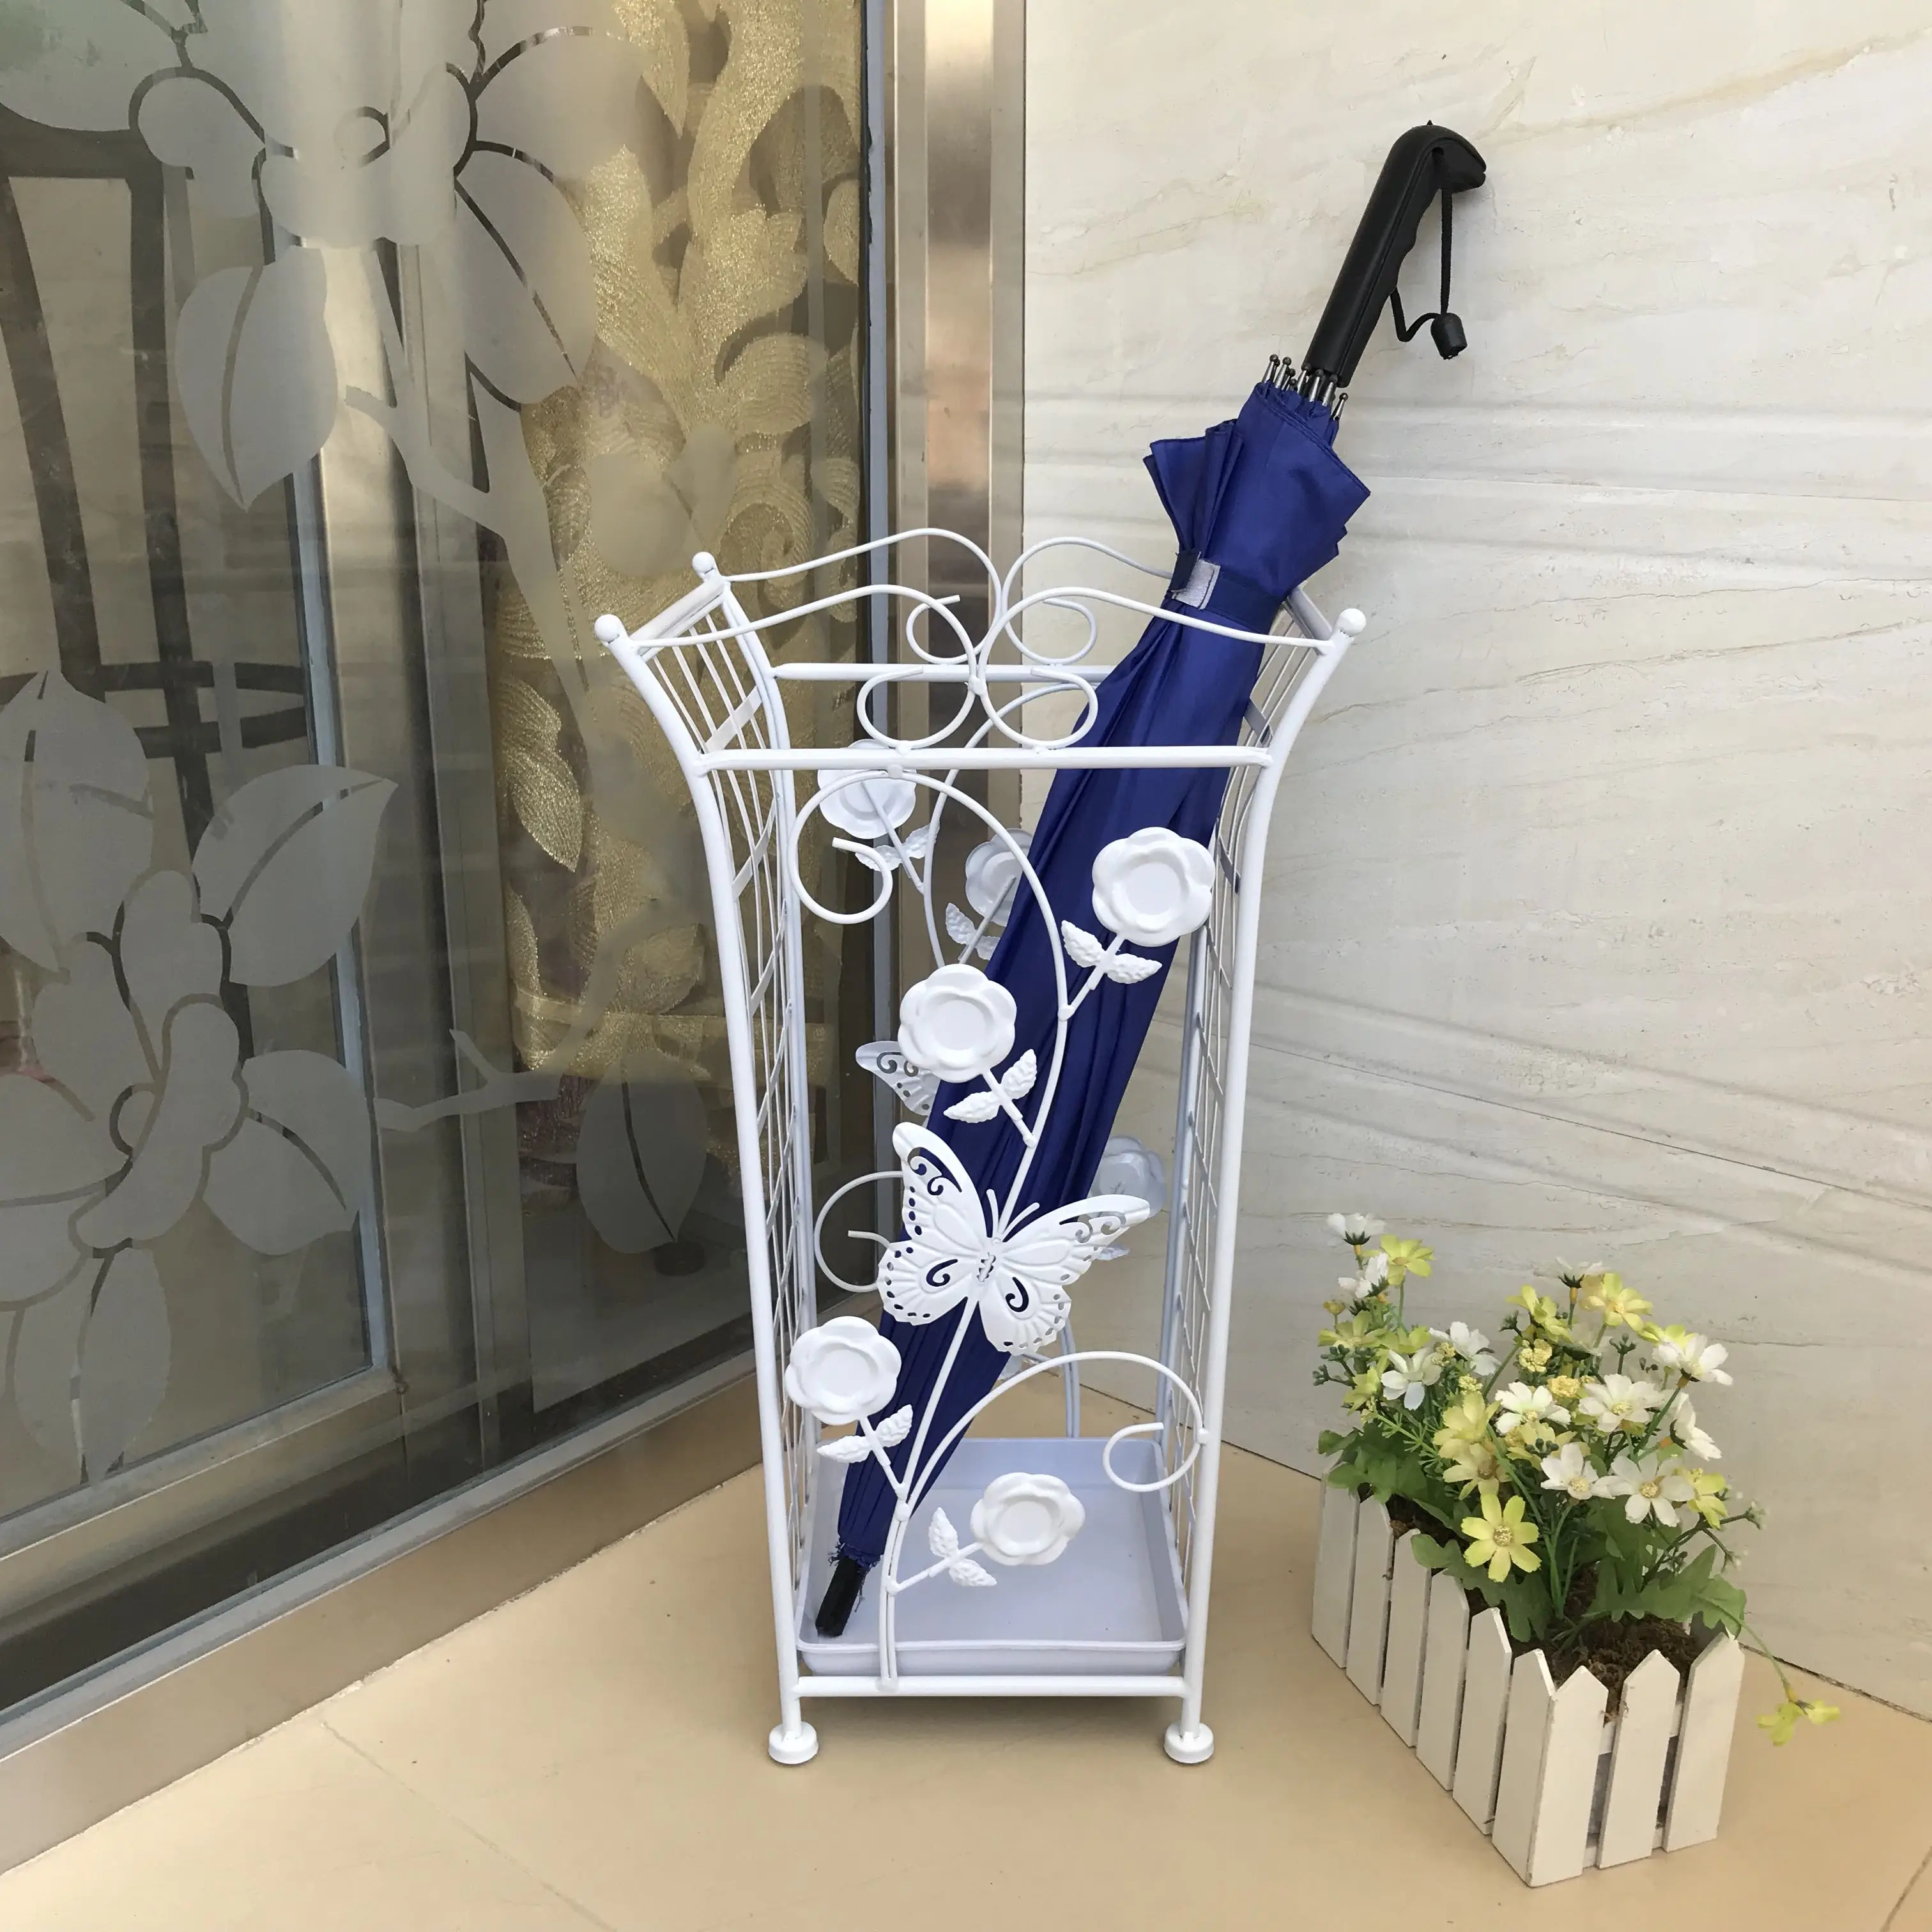 

Американская Европейская ретро железная художественная Бытовая подставка для зонта лобби гостиница Зонт ведро креативная стойка для хран...